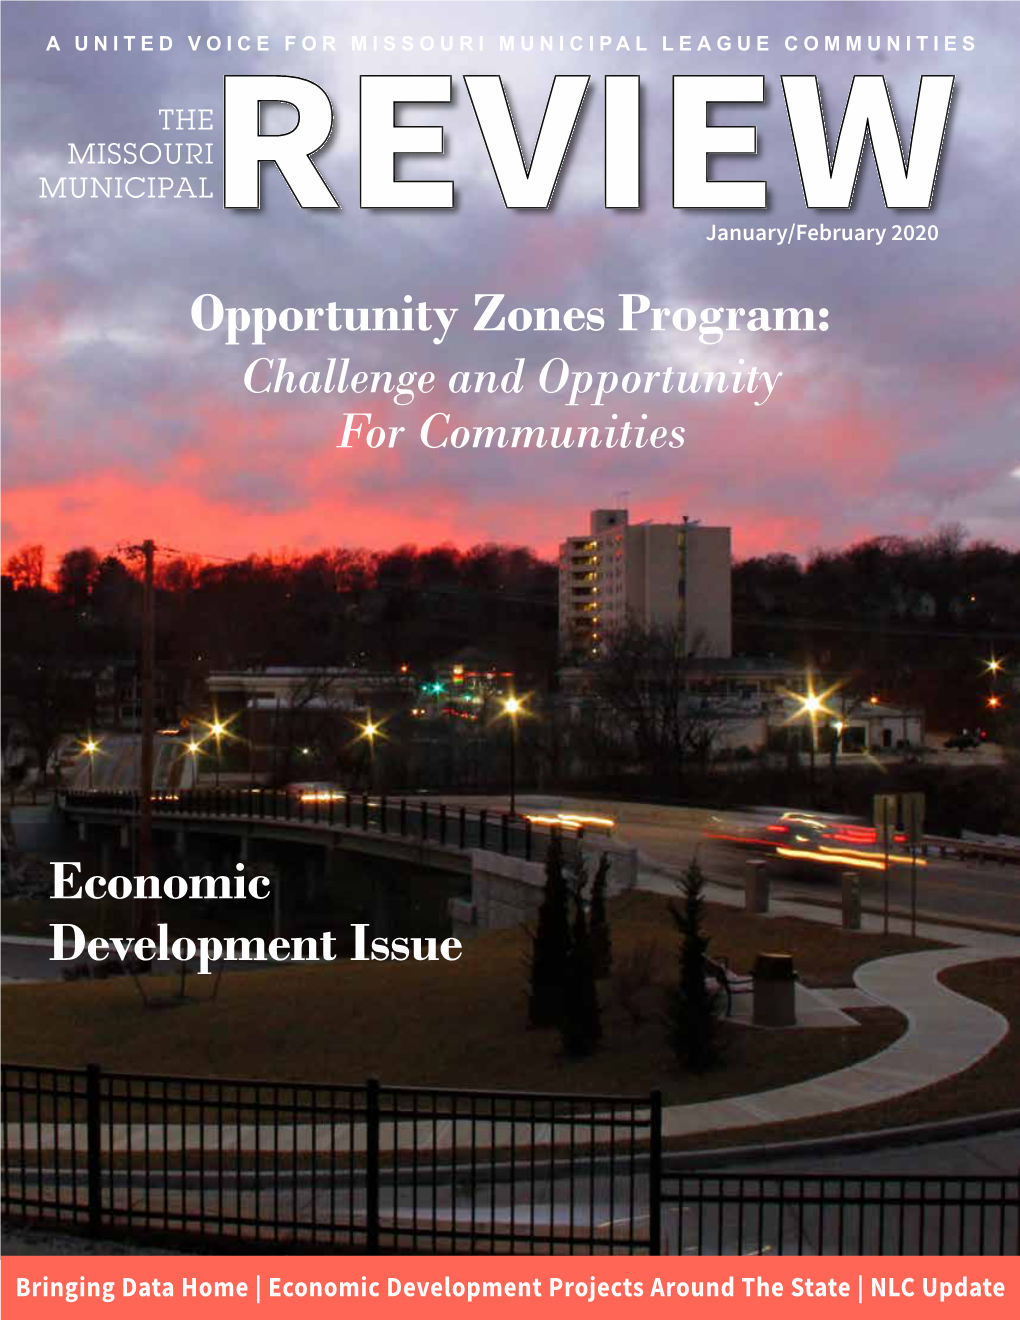 Opportunity Zones Program: Economic Development Issue